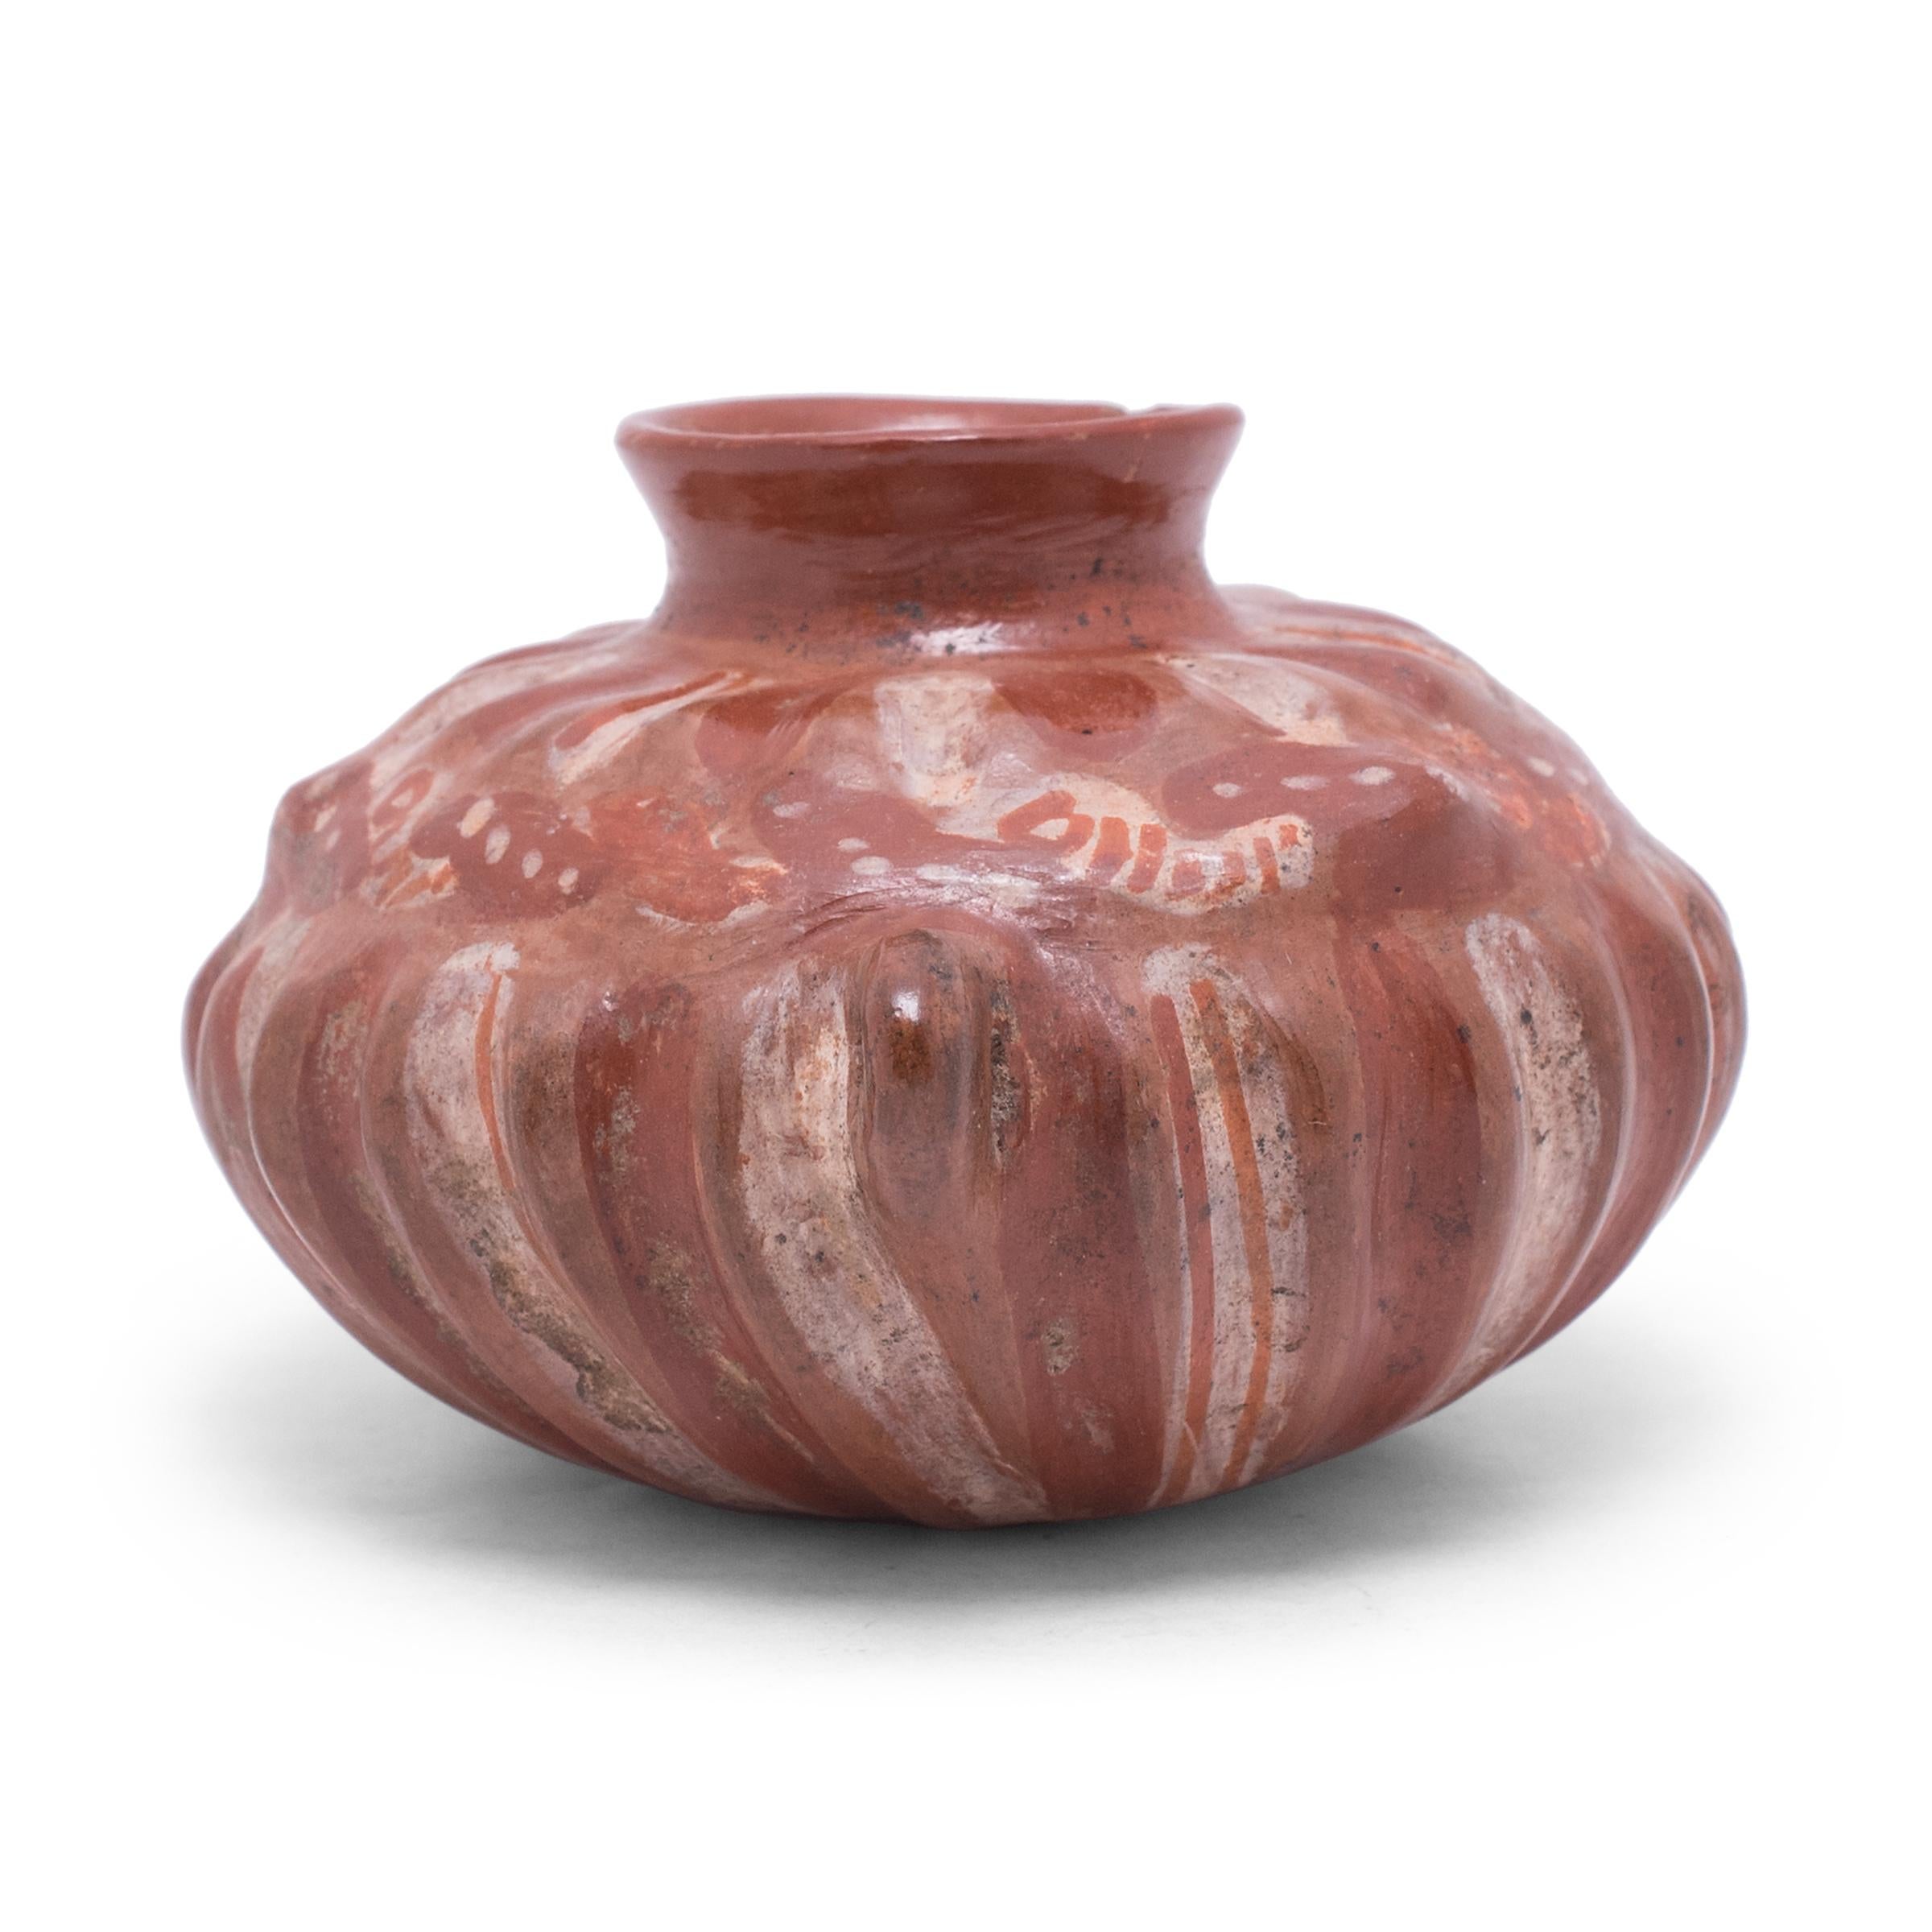 Cette petite olla est un bel exemple de poterie mésoaméricaine, décorée d'engobe rouge, blanc et orange dans le style de la céramique de Chupícuaro. Le corps large et globulaire du récipient a une forme lobée ressemblant à une courge ou à un cactus,